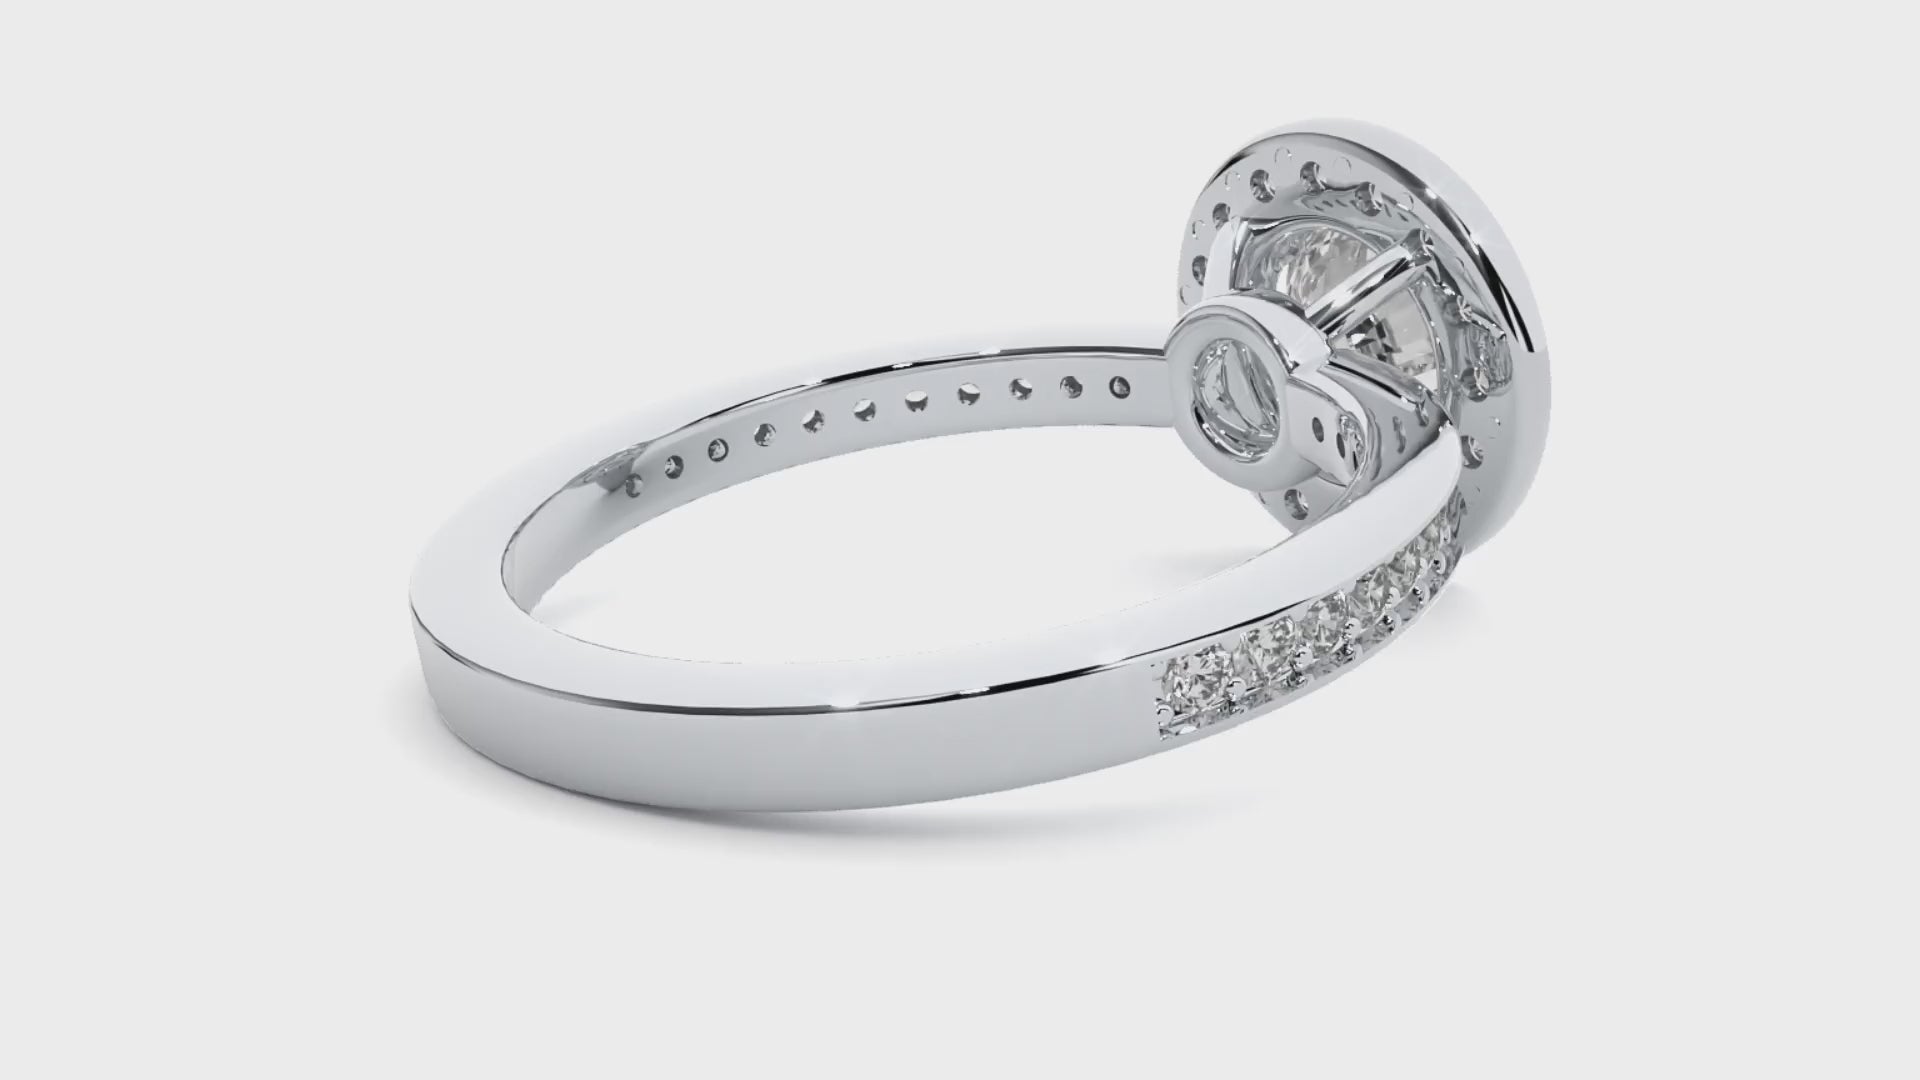 HOH Evangeline Diamond Halo Ring